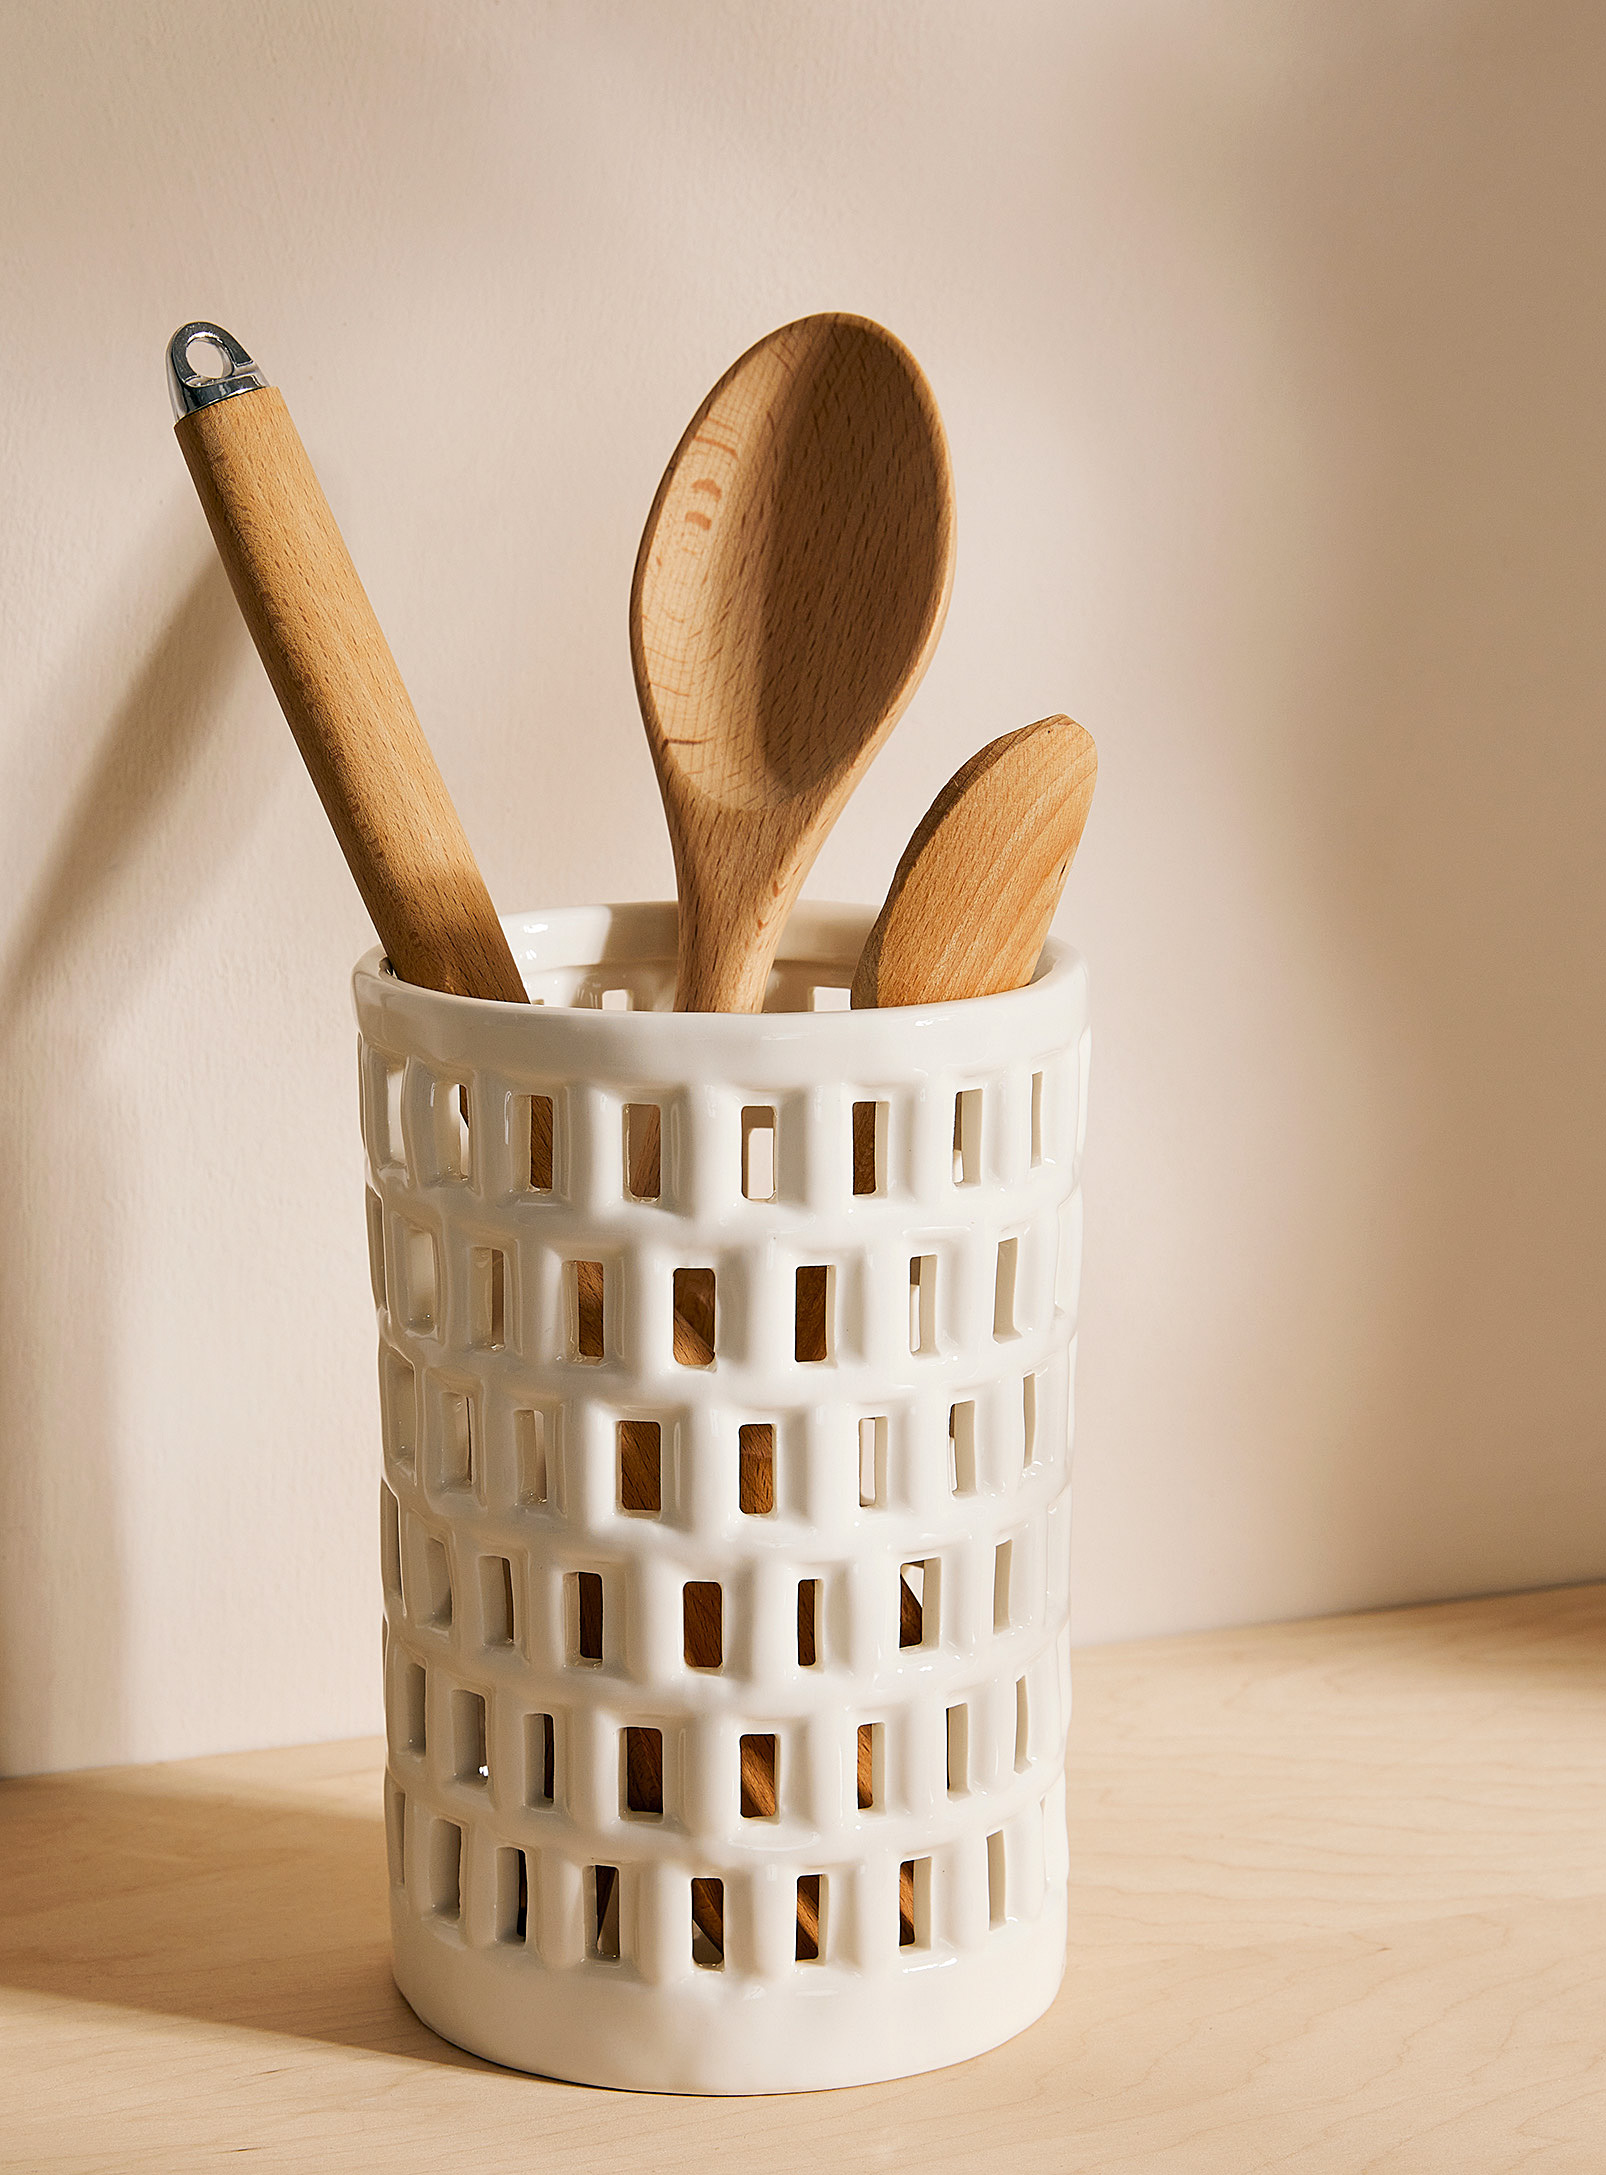 Simons Maison - Basket-style ceramic utensil holder